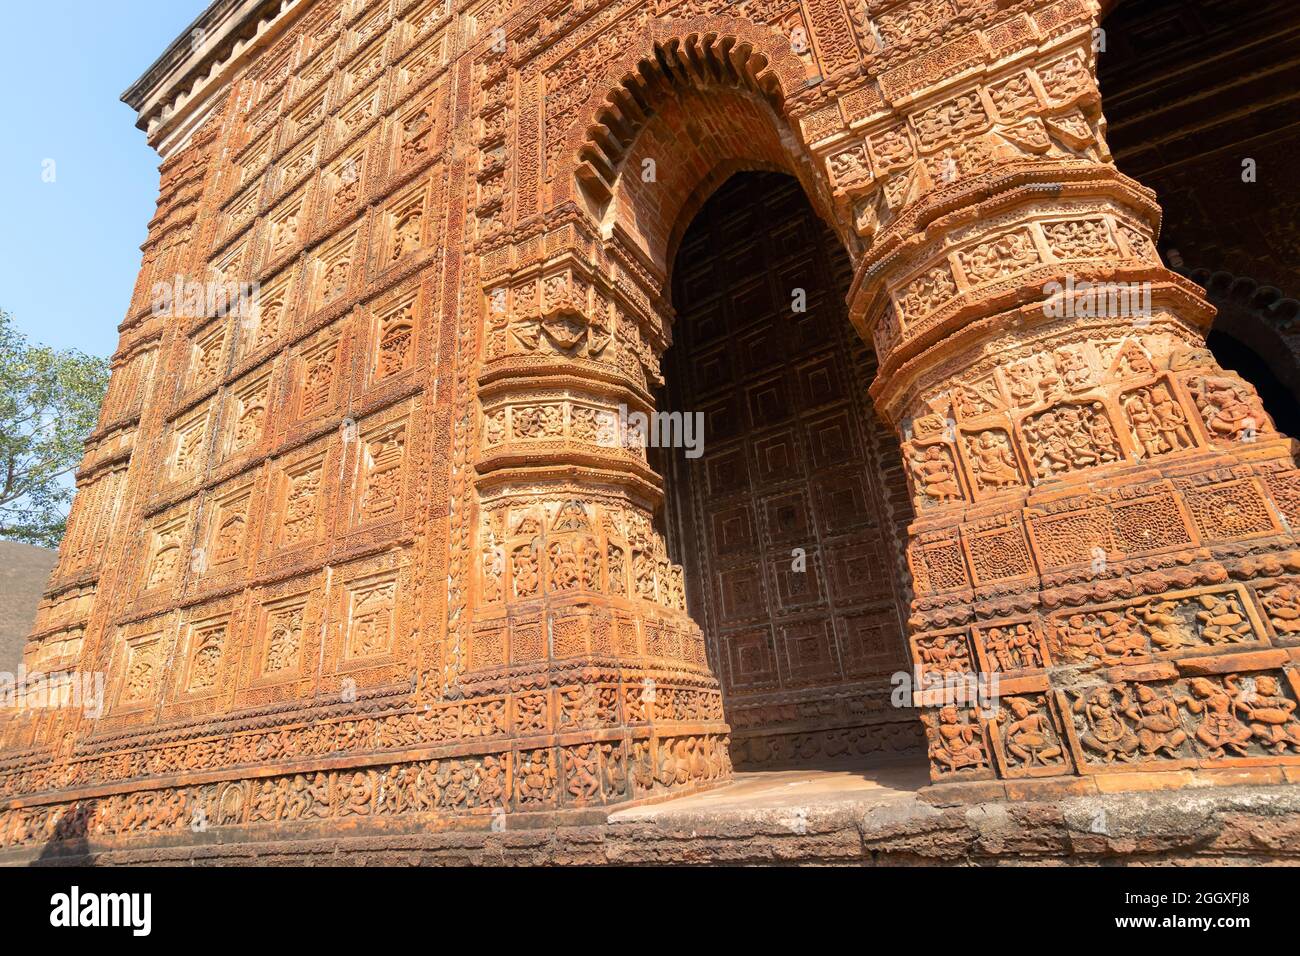 Célèbres œuvres d'art en terre cuite (argile cuite de couleur rouge brunâtre, utilisées comme matériaux de construction ornementaux) au temple de Madanmohan, à Bishnupur, W.B., Inde. Banque D'Images